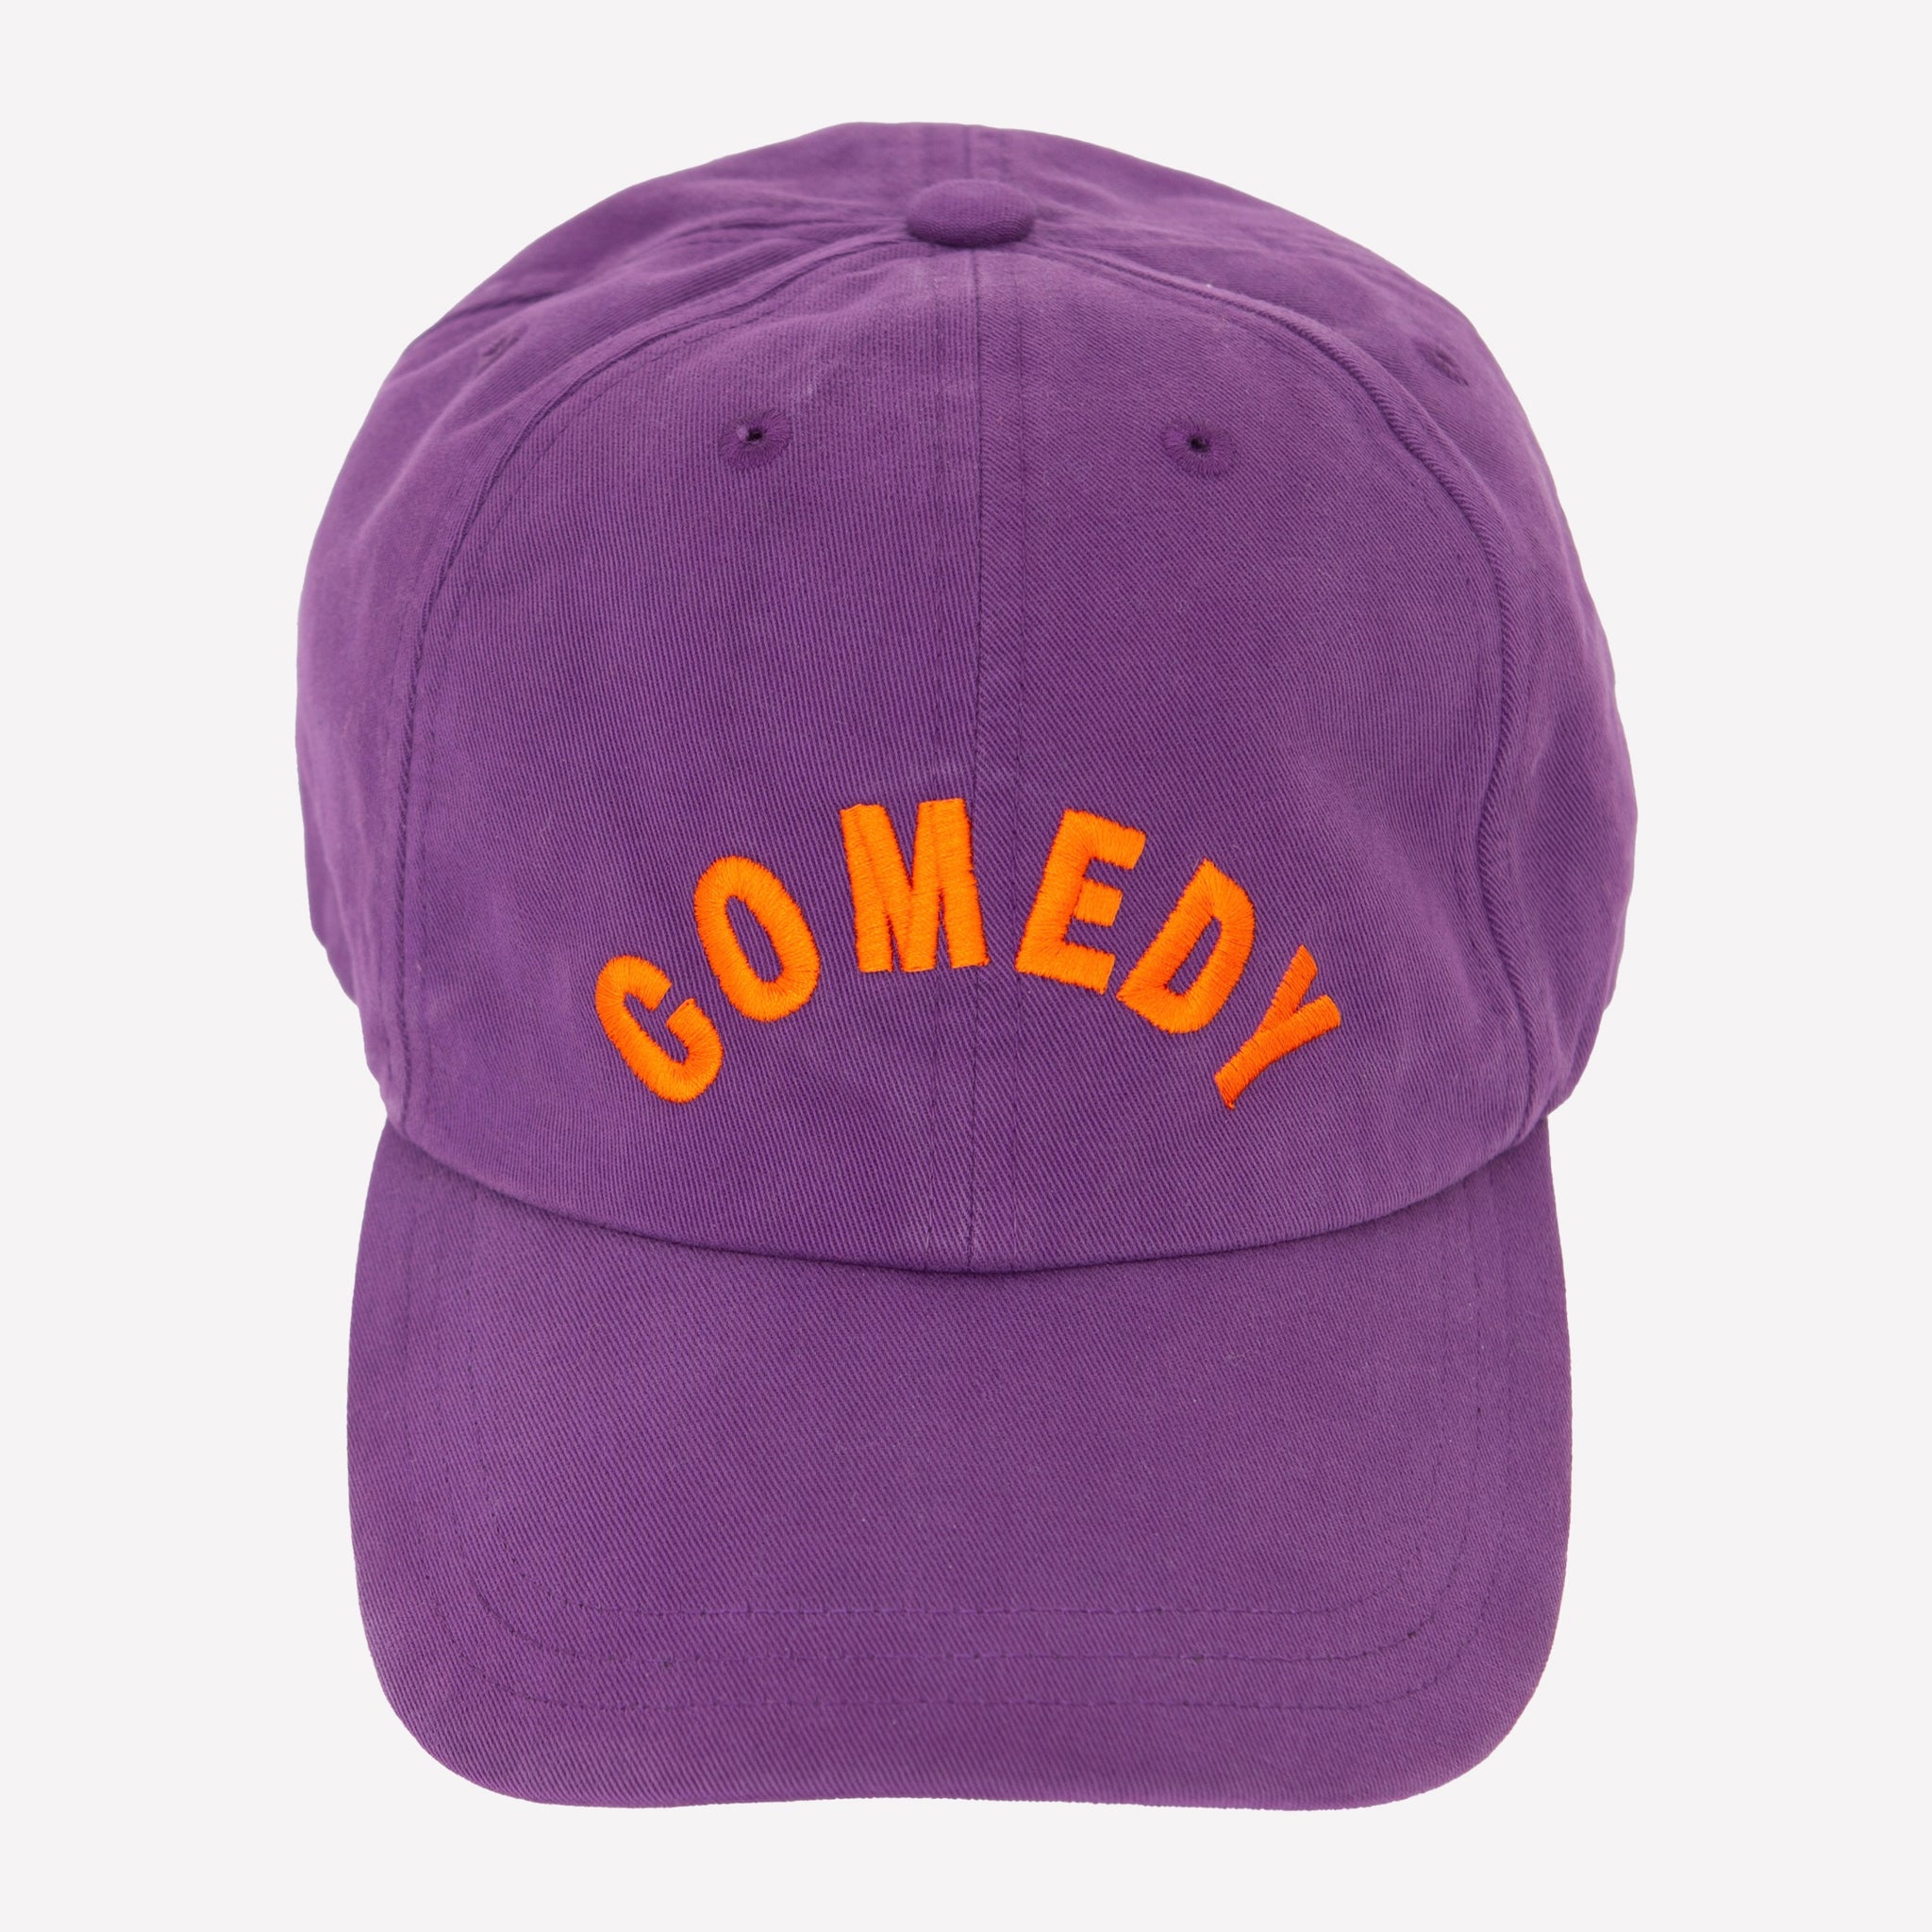 "Comedy" Cap